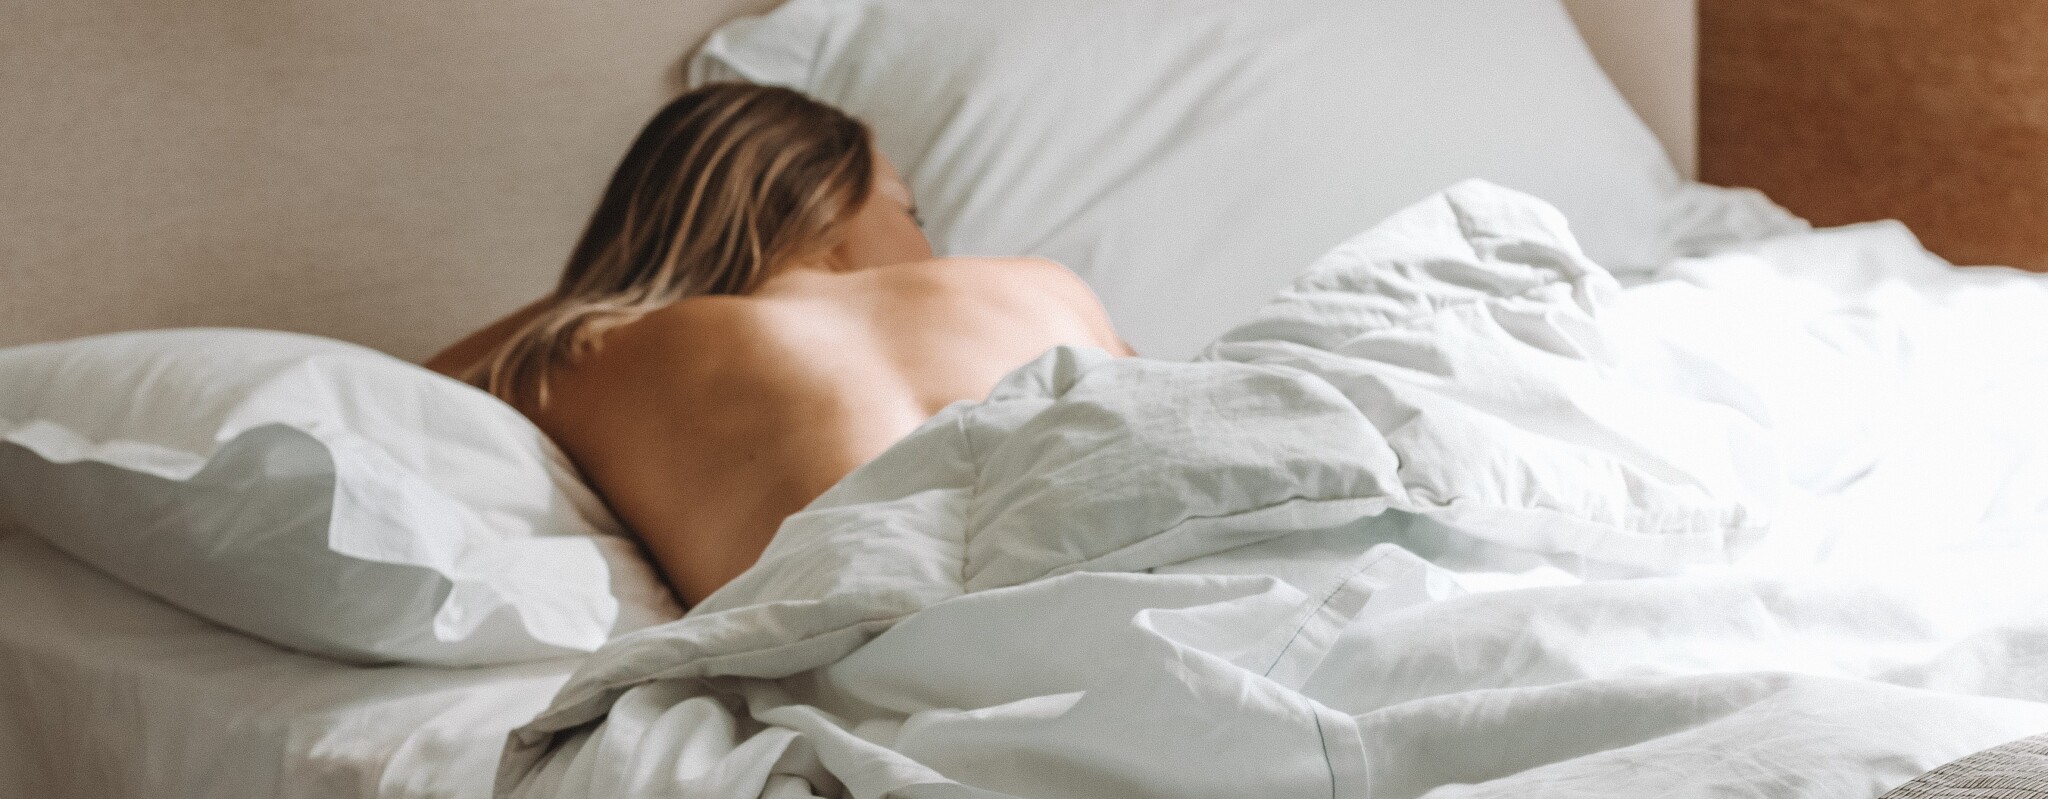 4 dôvody prečo budete zdravší a bohatší, ak spíte nahí